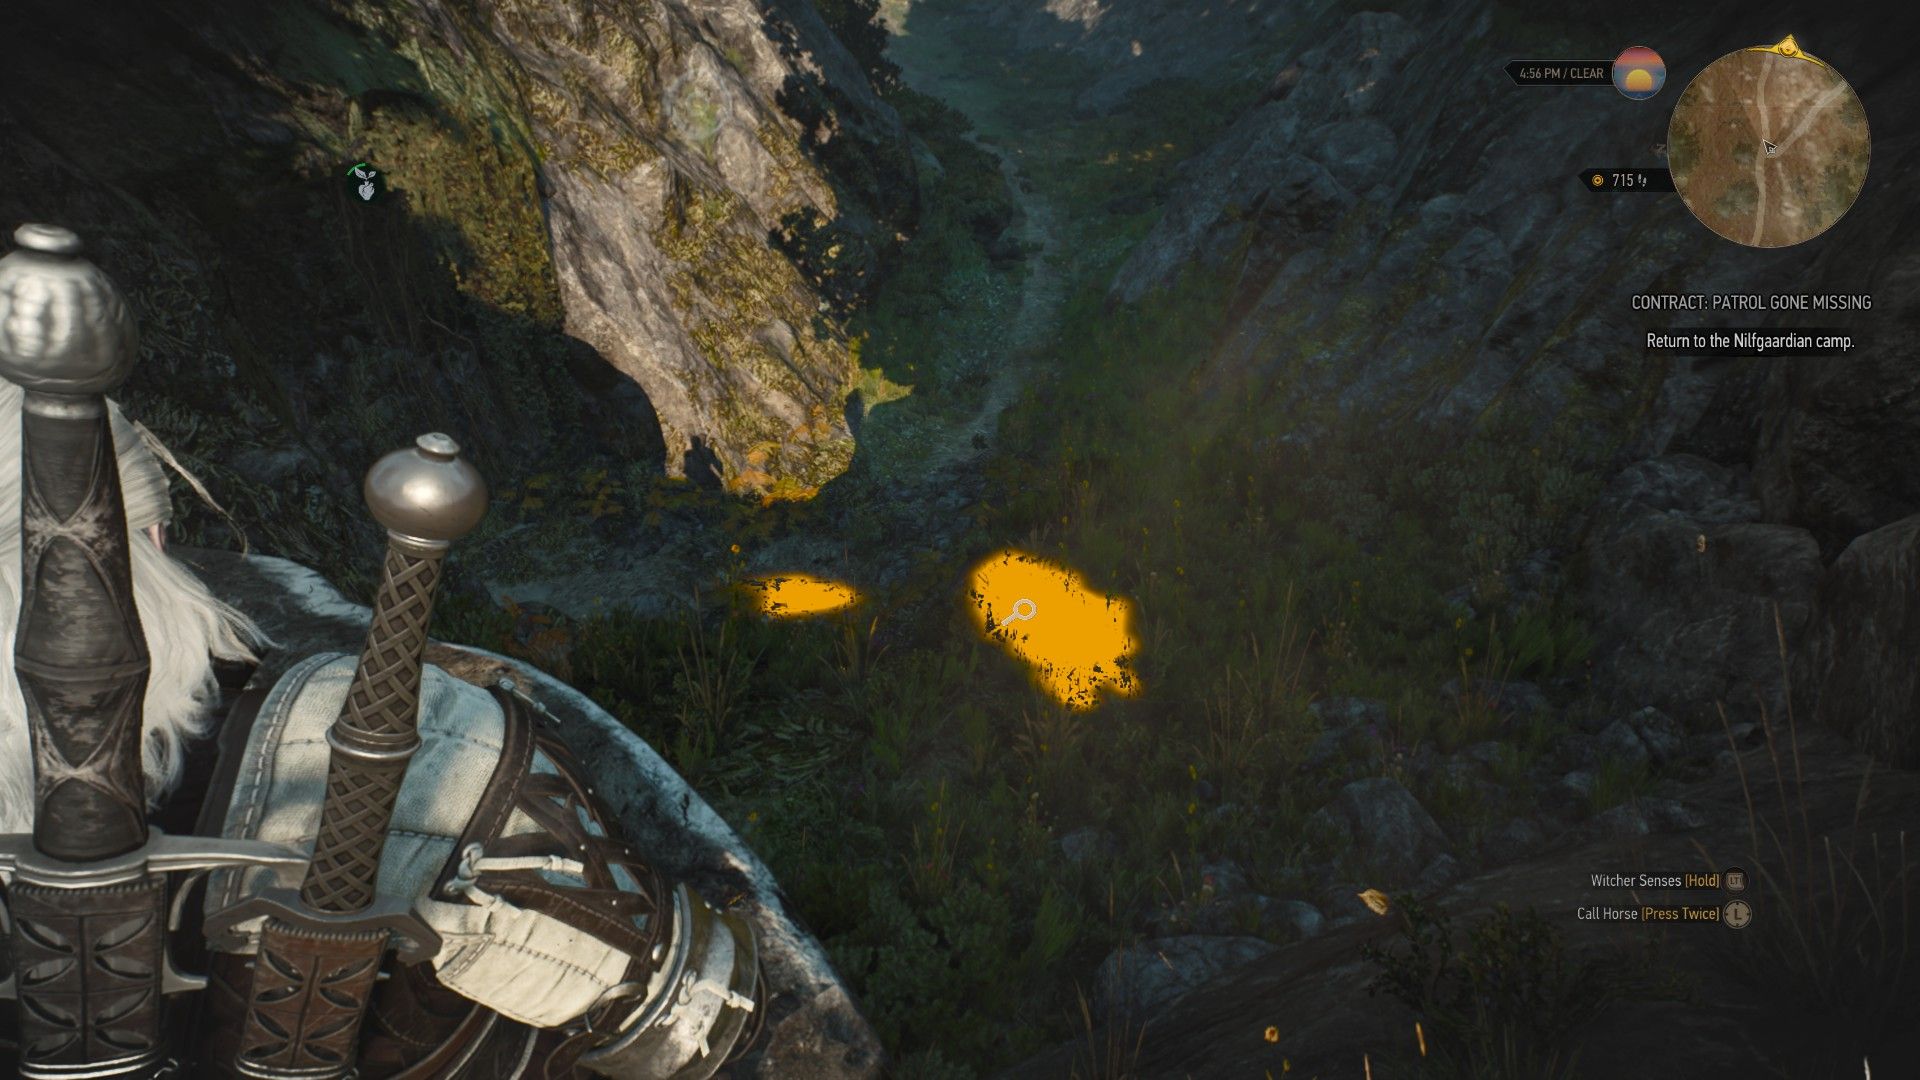 A screenshot showing Geralt's warlock senses highlighting a path through a narrow pass.